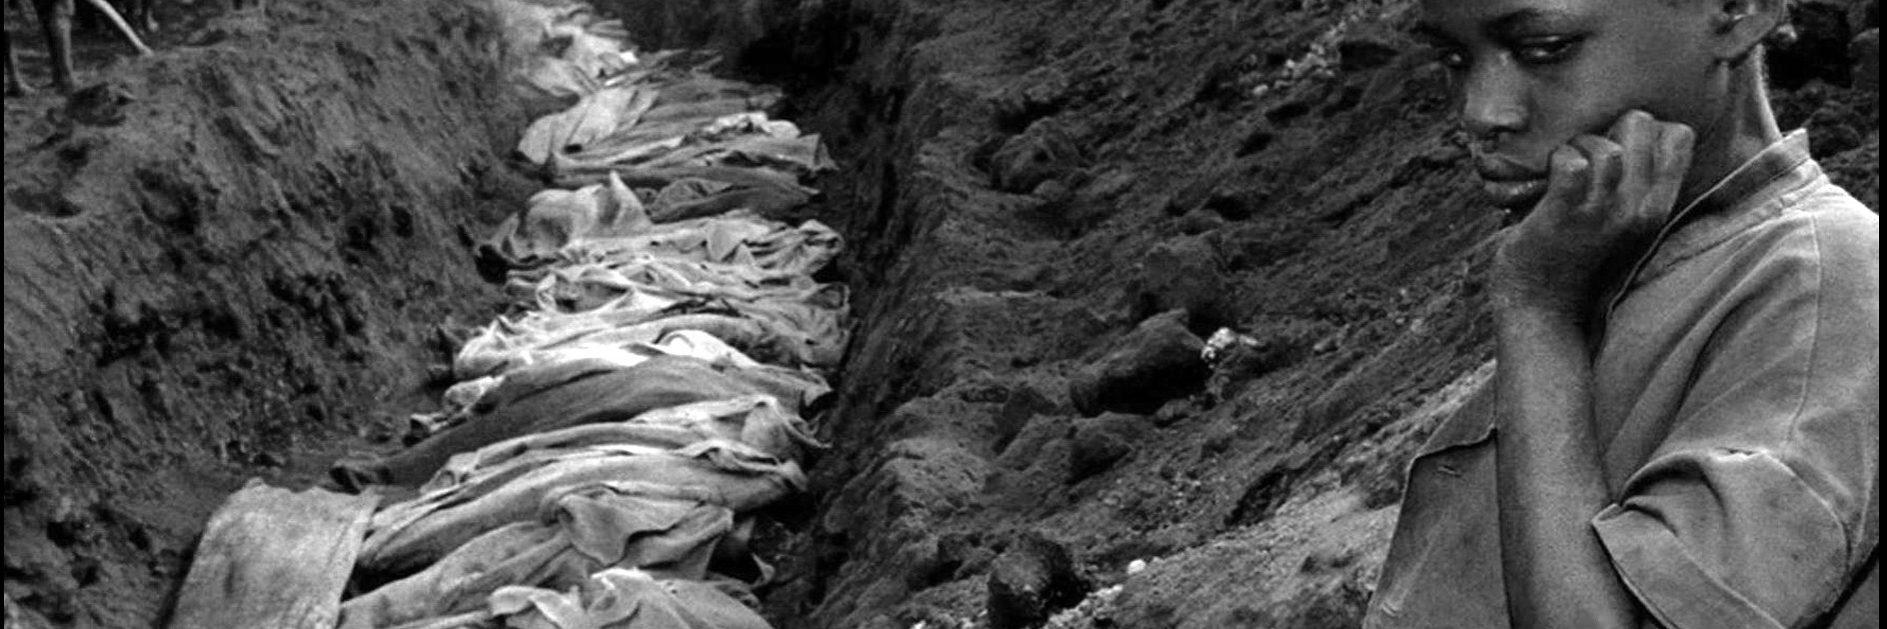 people killed in 1994 Rwanda genocide.